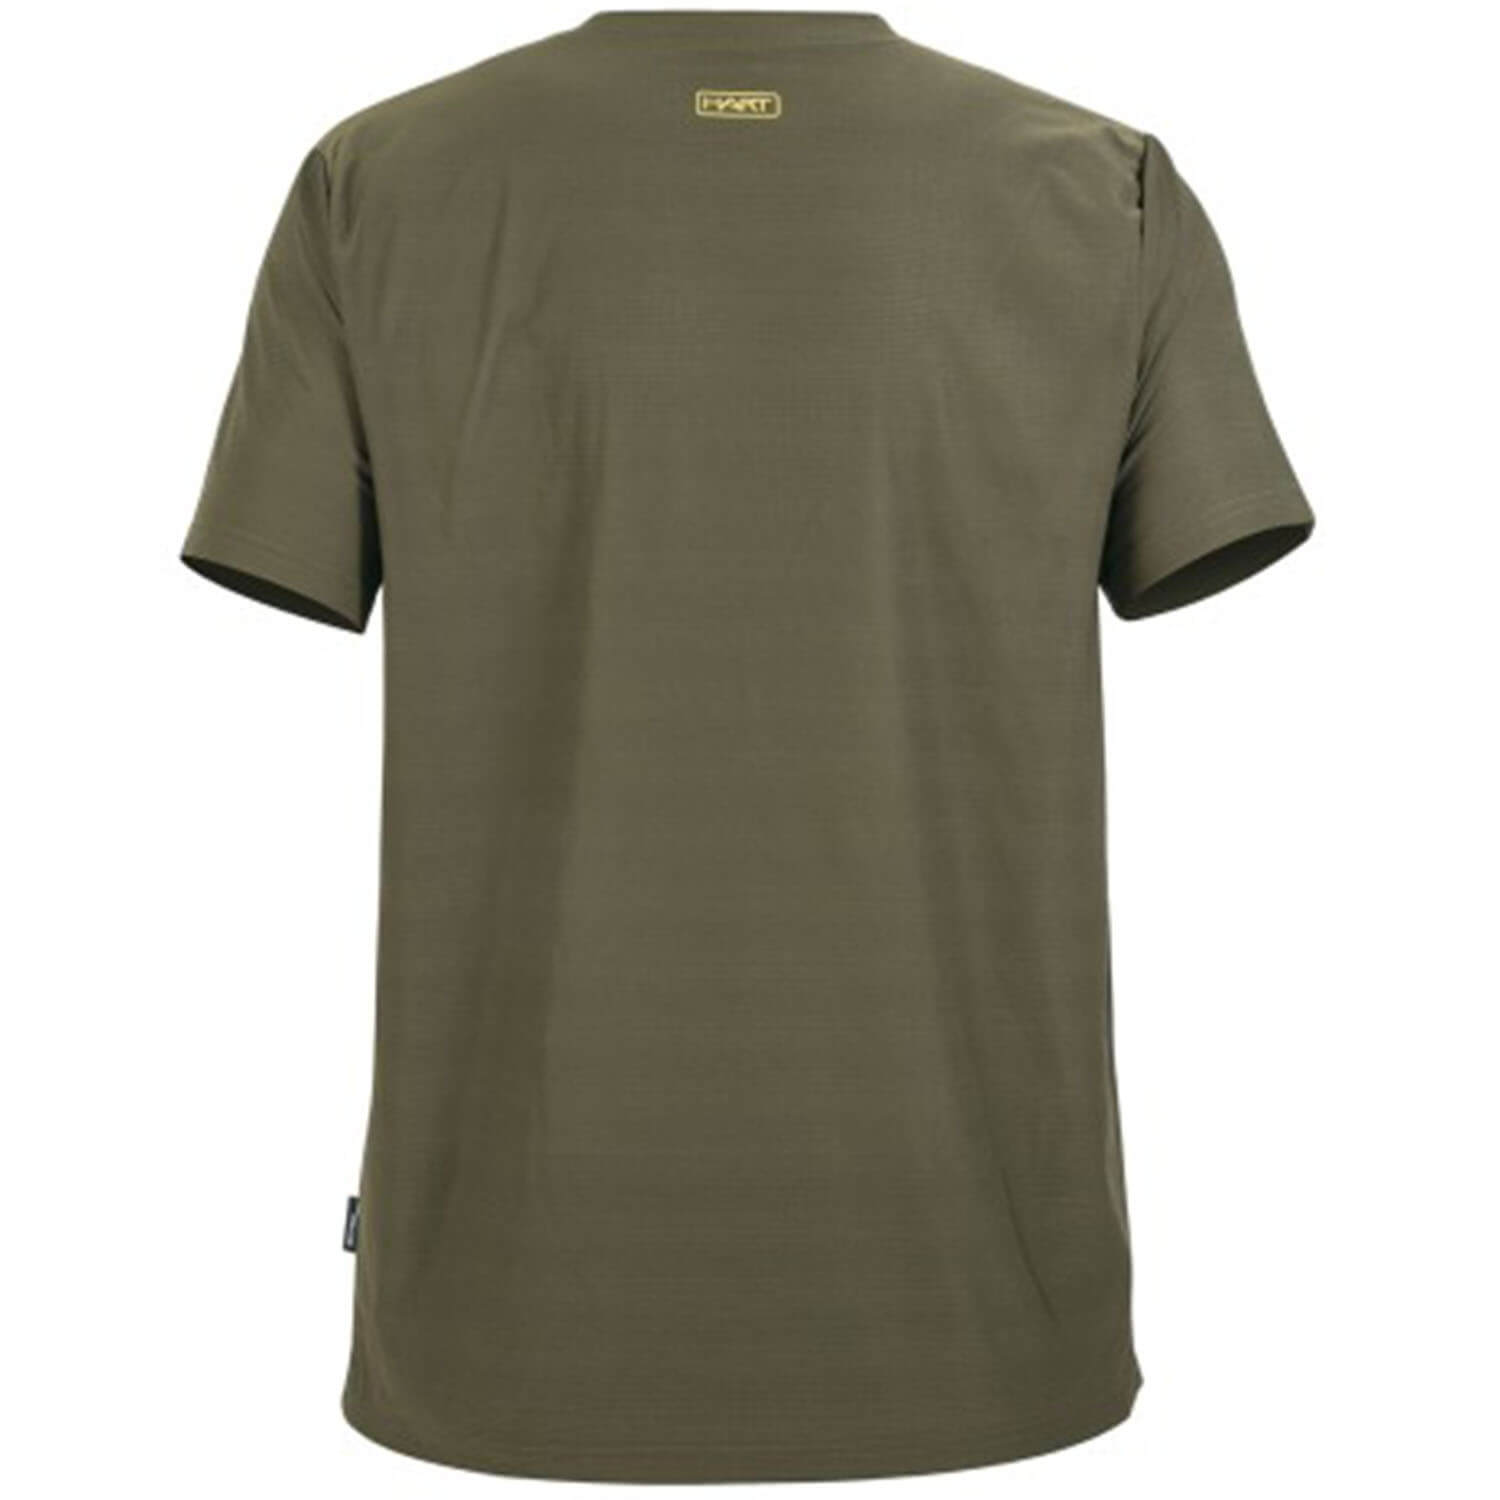  Hart Ural-TS T-shirt (green)